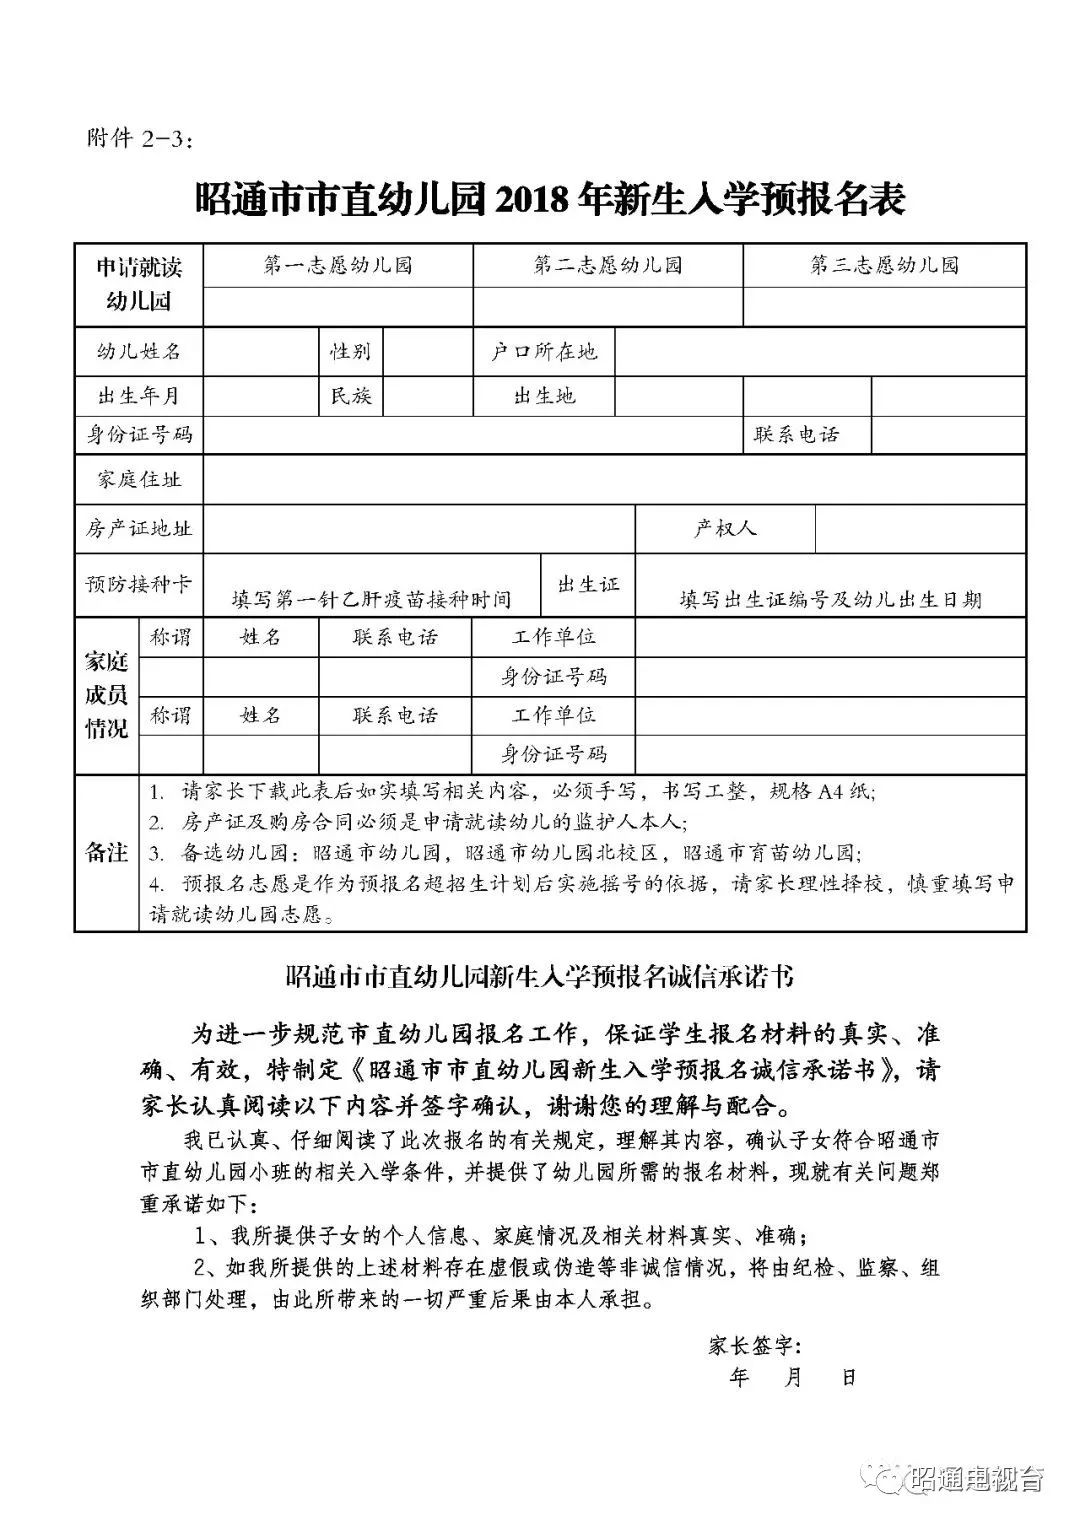 2-3昭通市市直幼儿园2018年新生入学预报名表